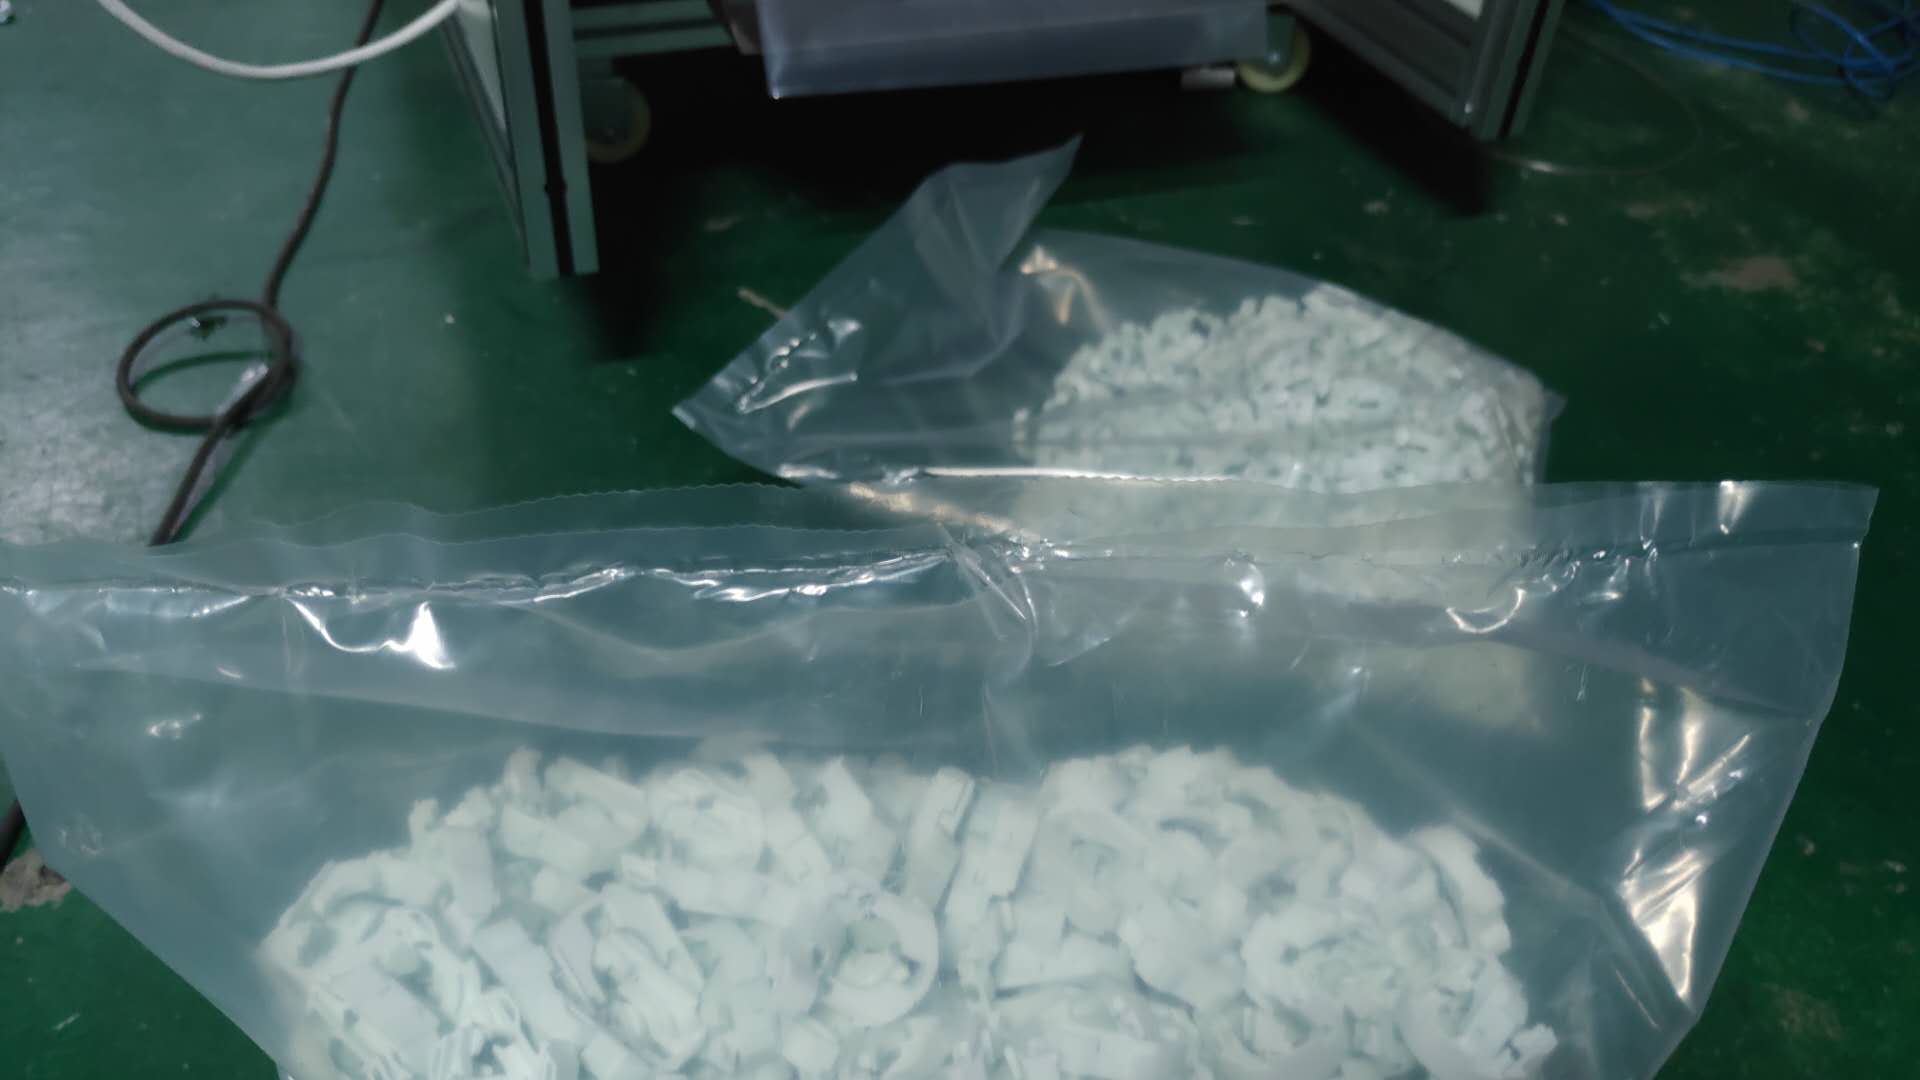 散件视觉计数包装机塑料件硅胶制品端子数粒包装-15060768065